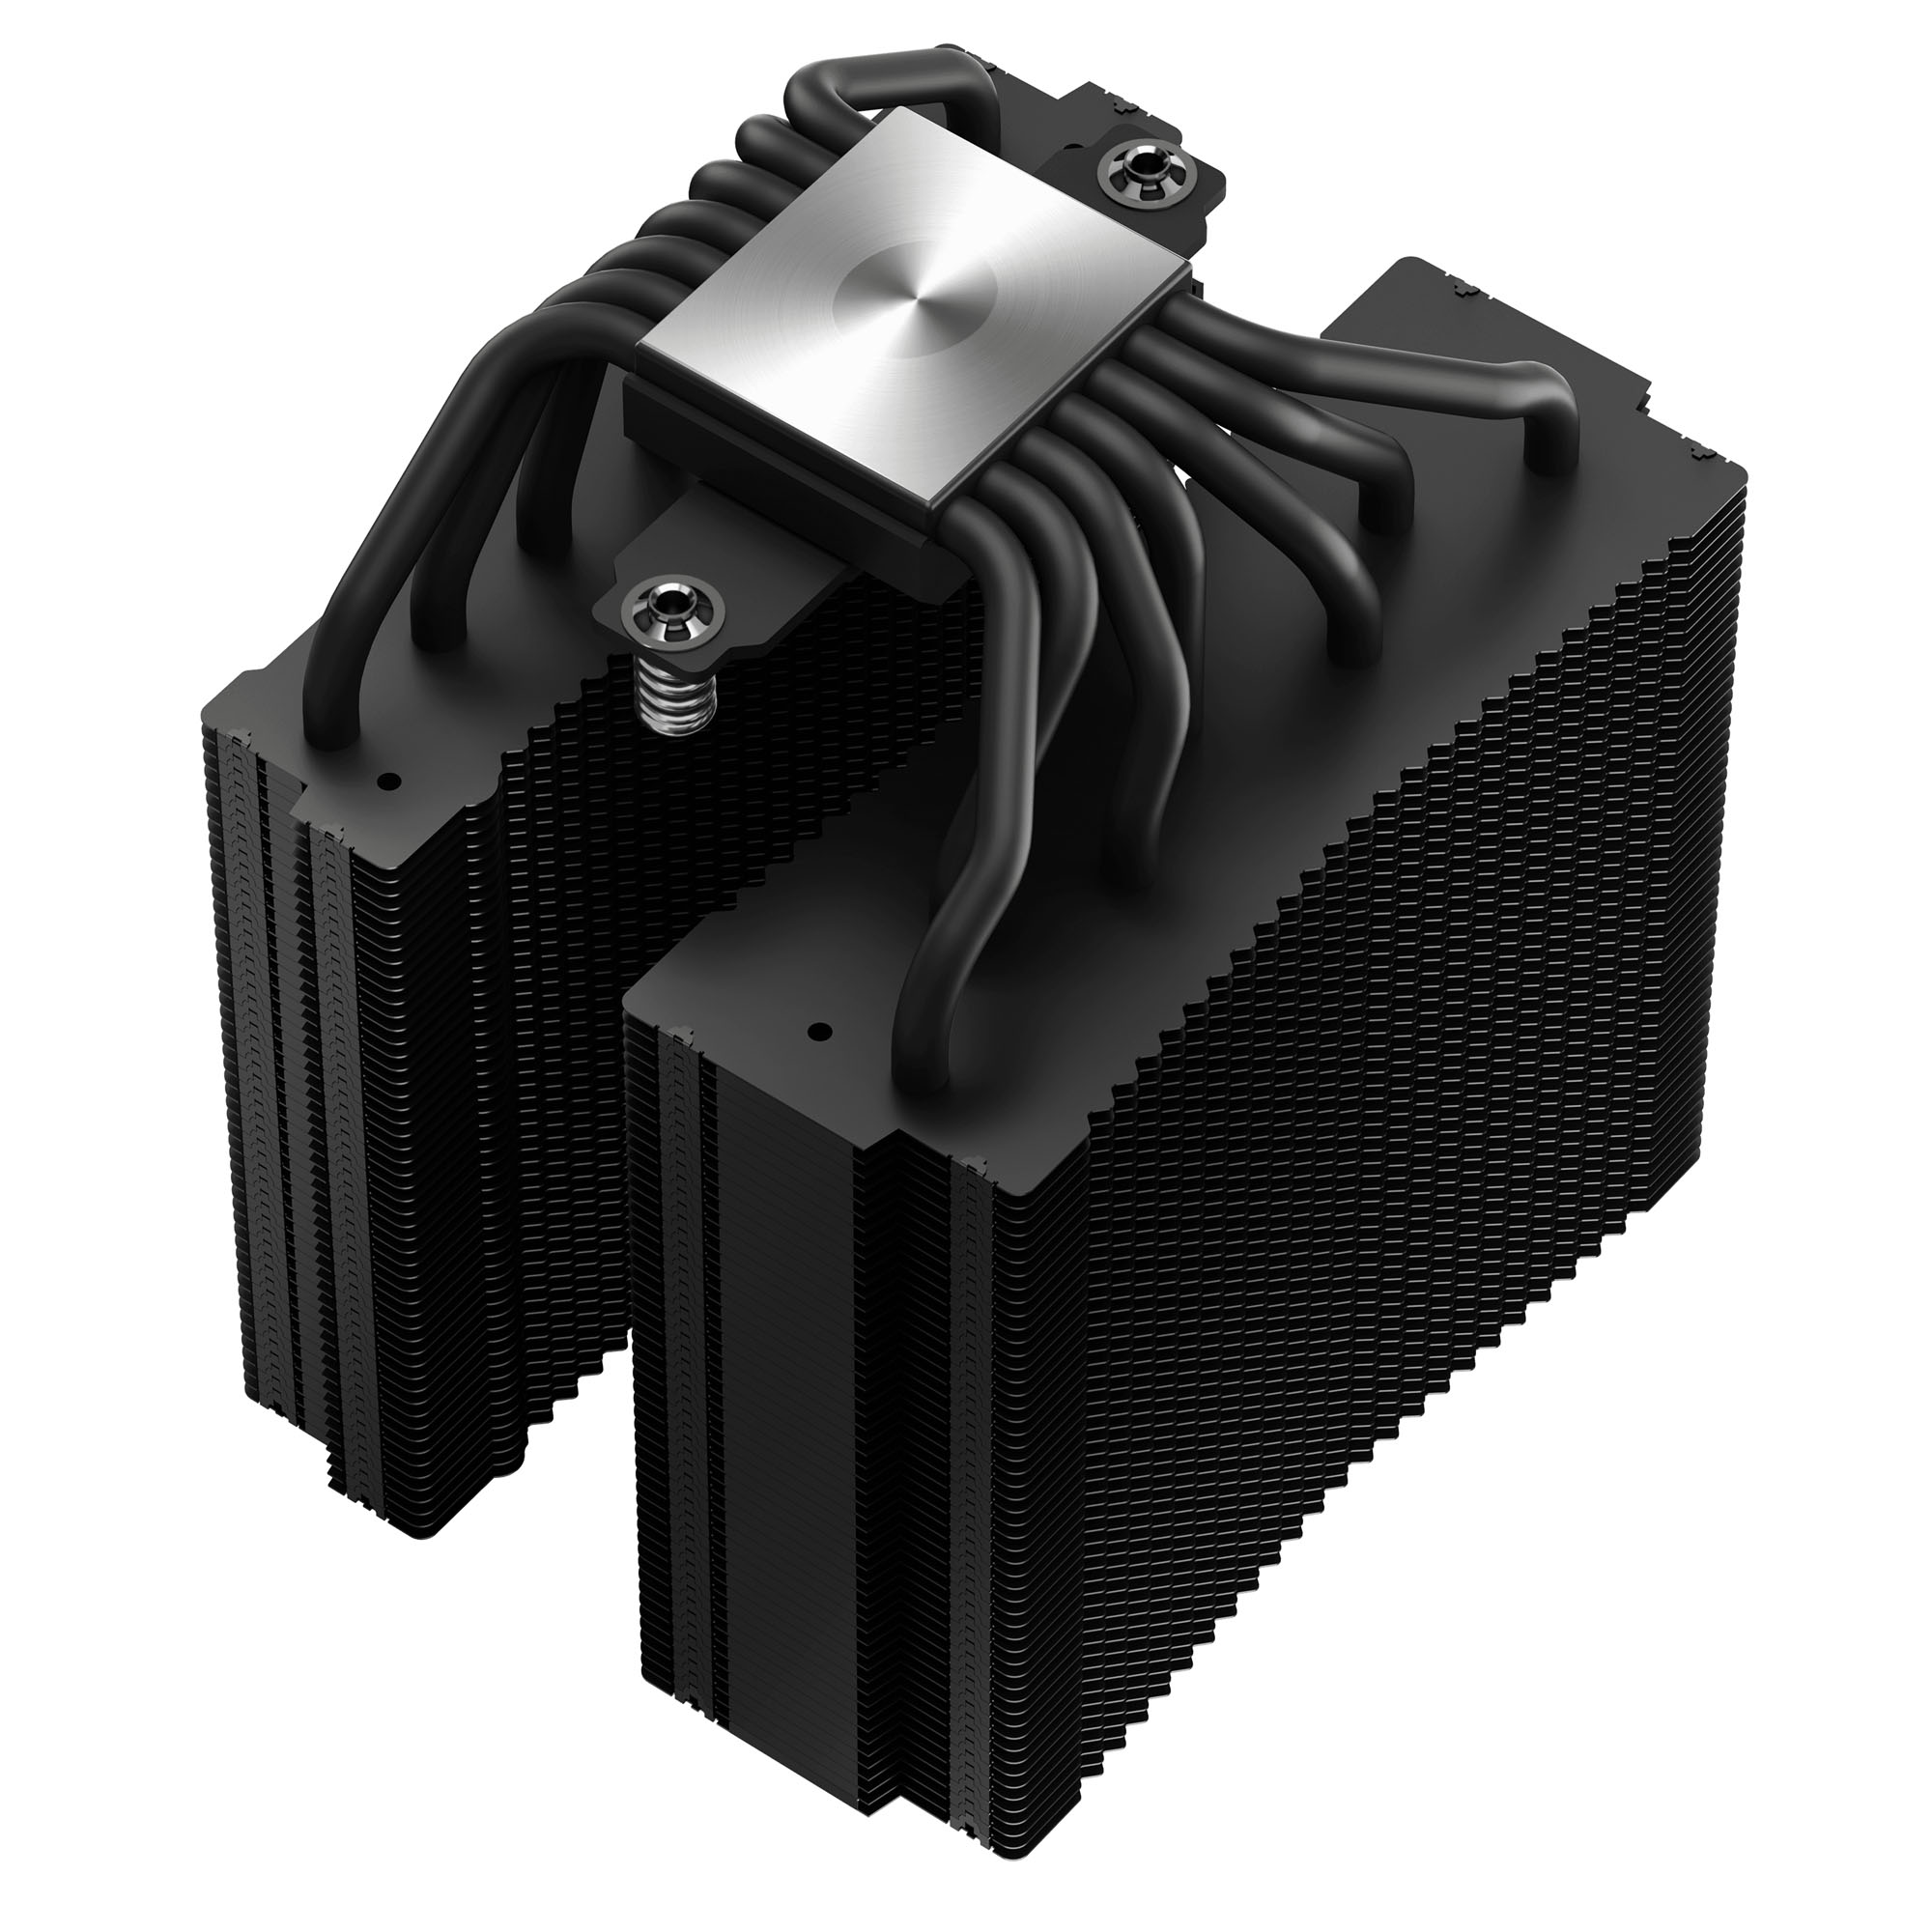 DeepCool - DeepCool ASSASSIN 4S 140mm Fan CPU Cooler - Black